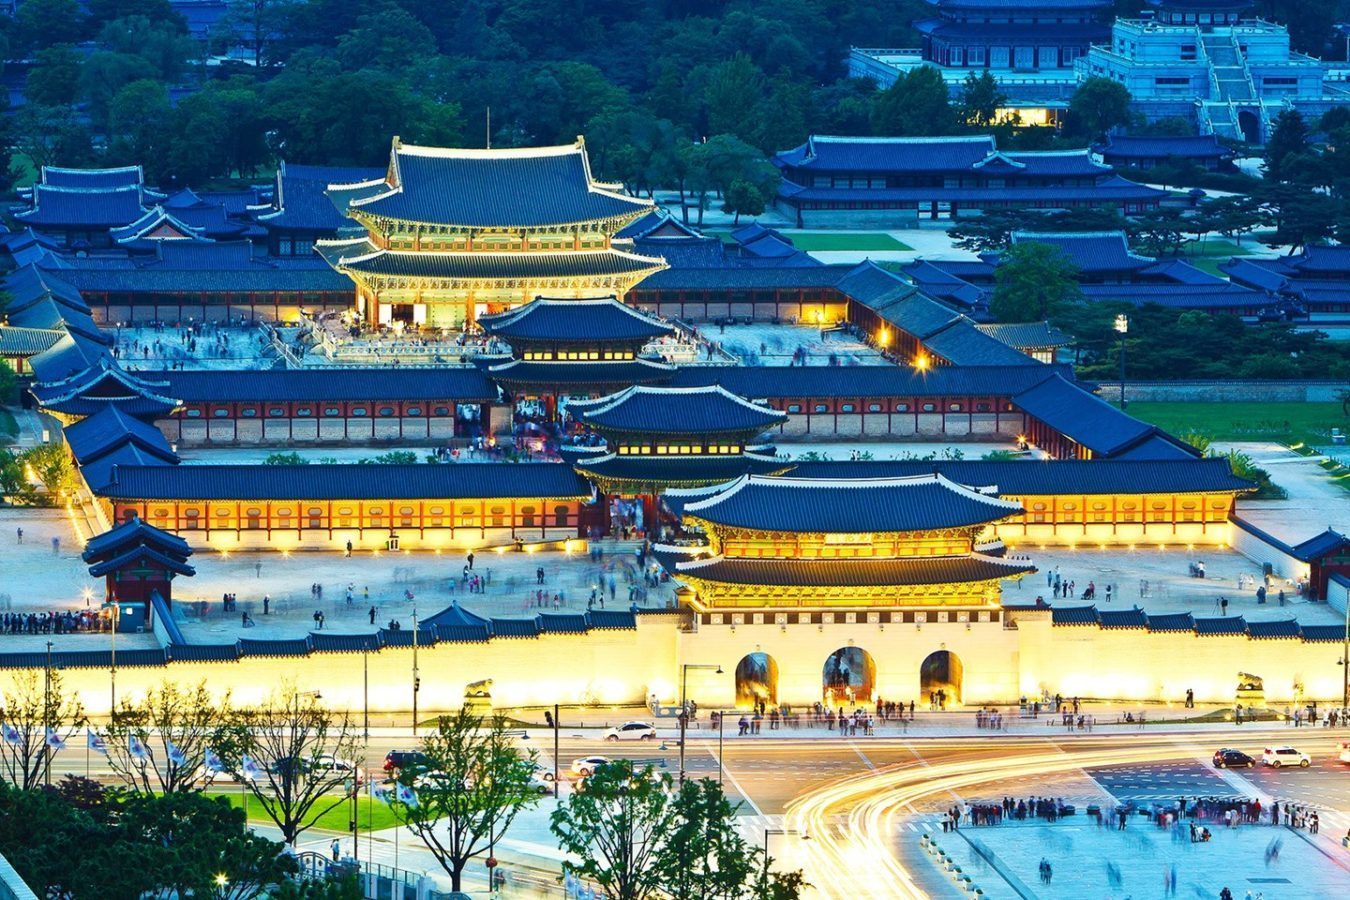  Cung điện Gyeongbokgung là cung điện lớn nhất Hàn Quốc